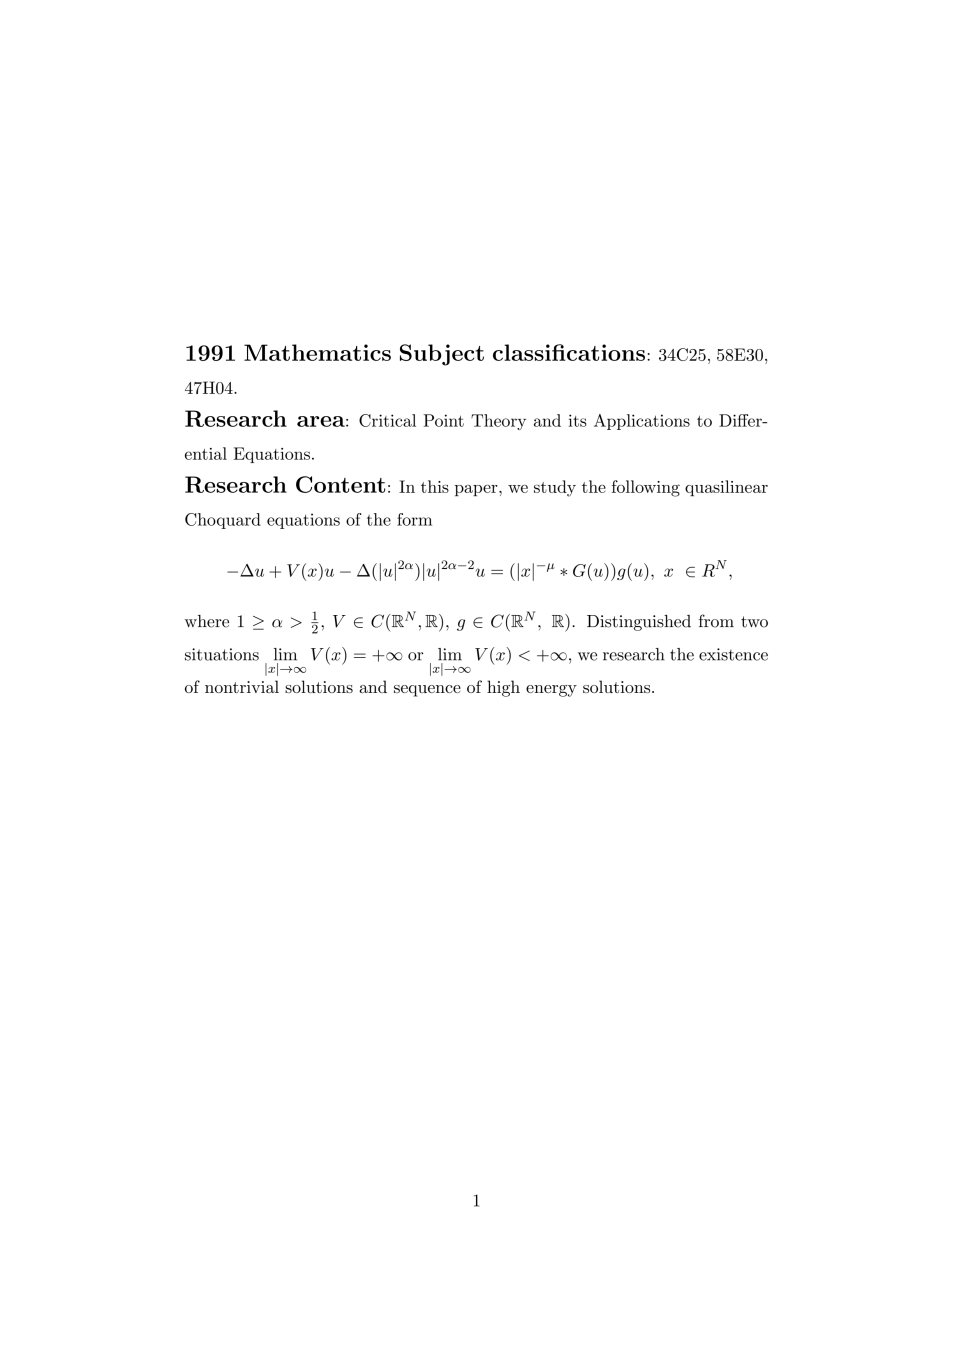 Multiple Solutions For A Class Of Quasilinear Choquard Equations Authorea